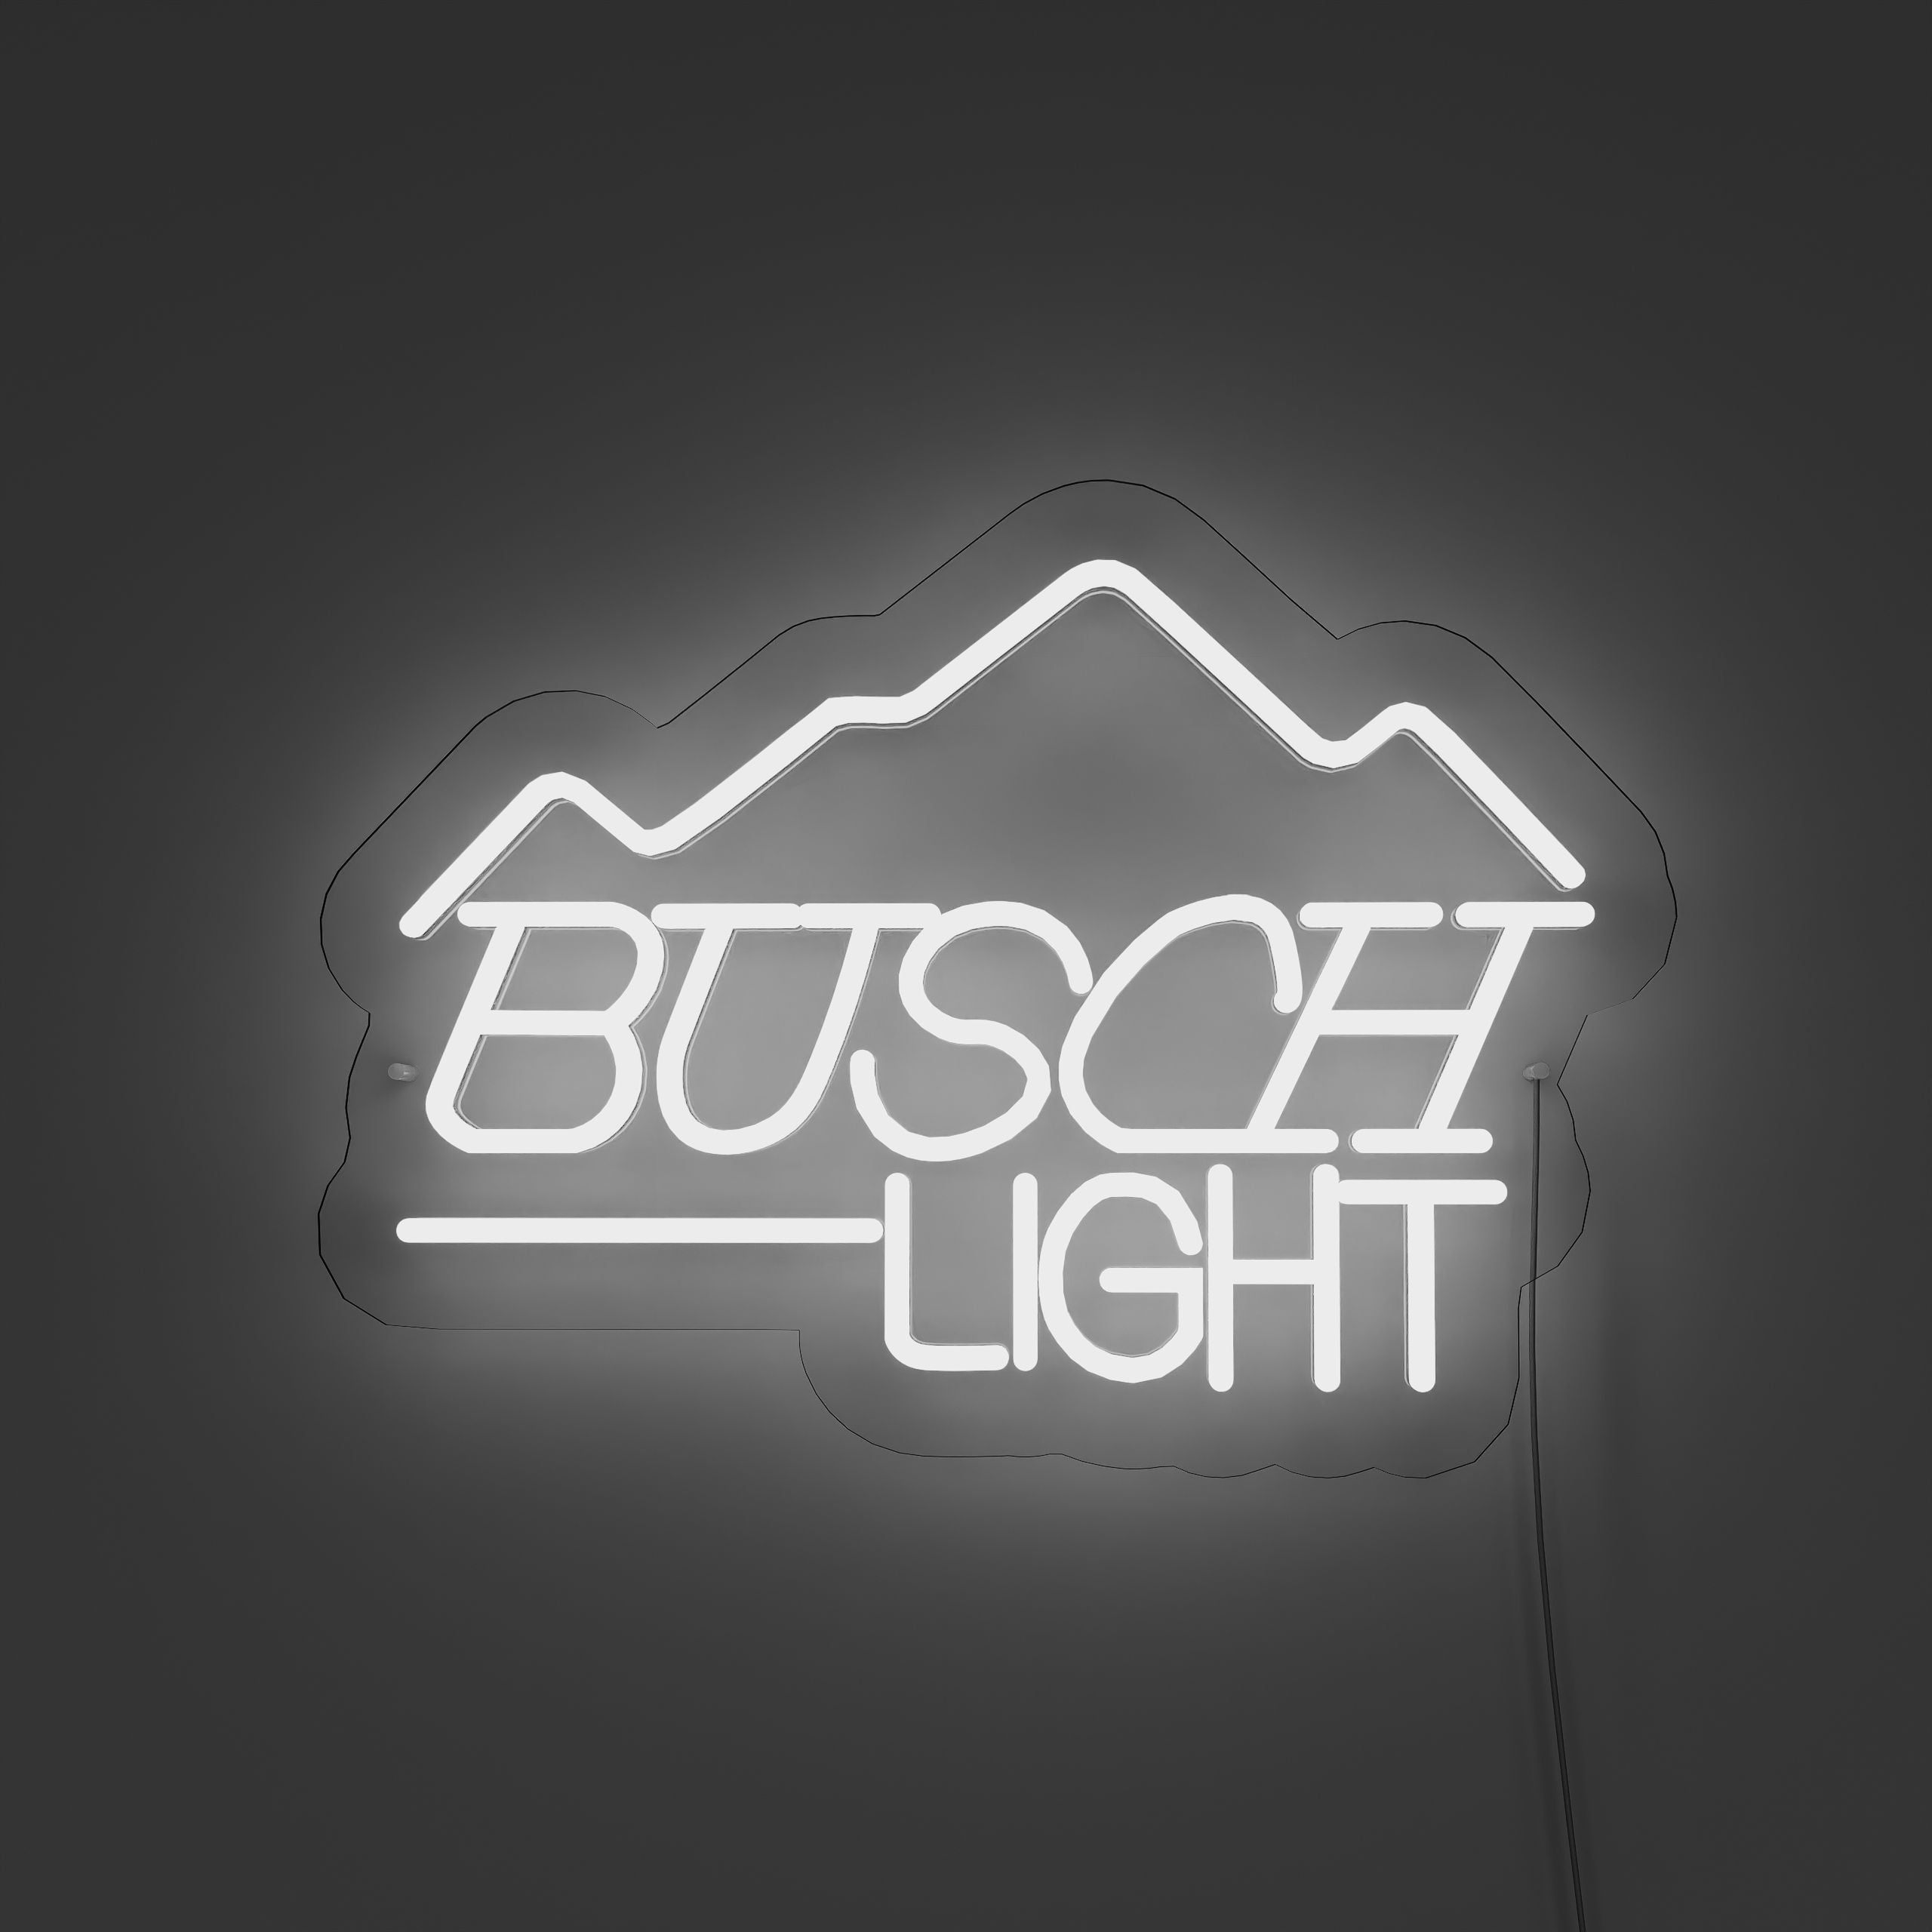 fbusch-light-neon-signs-FloralWwhite-Neon-sign-Lite